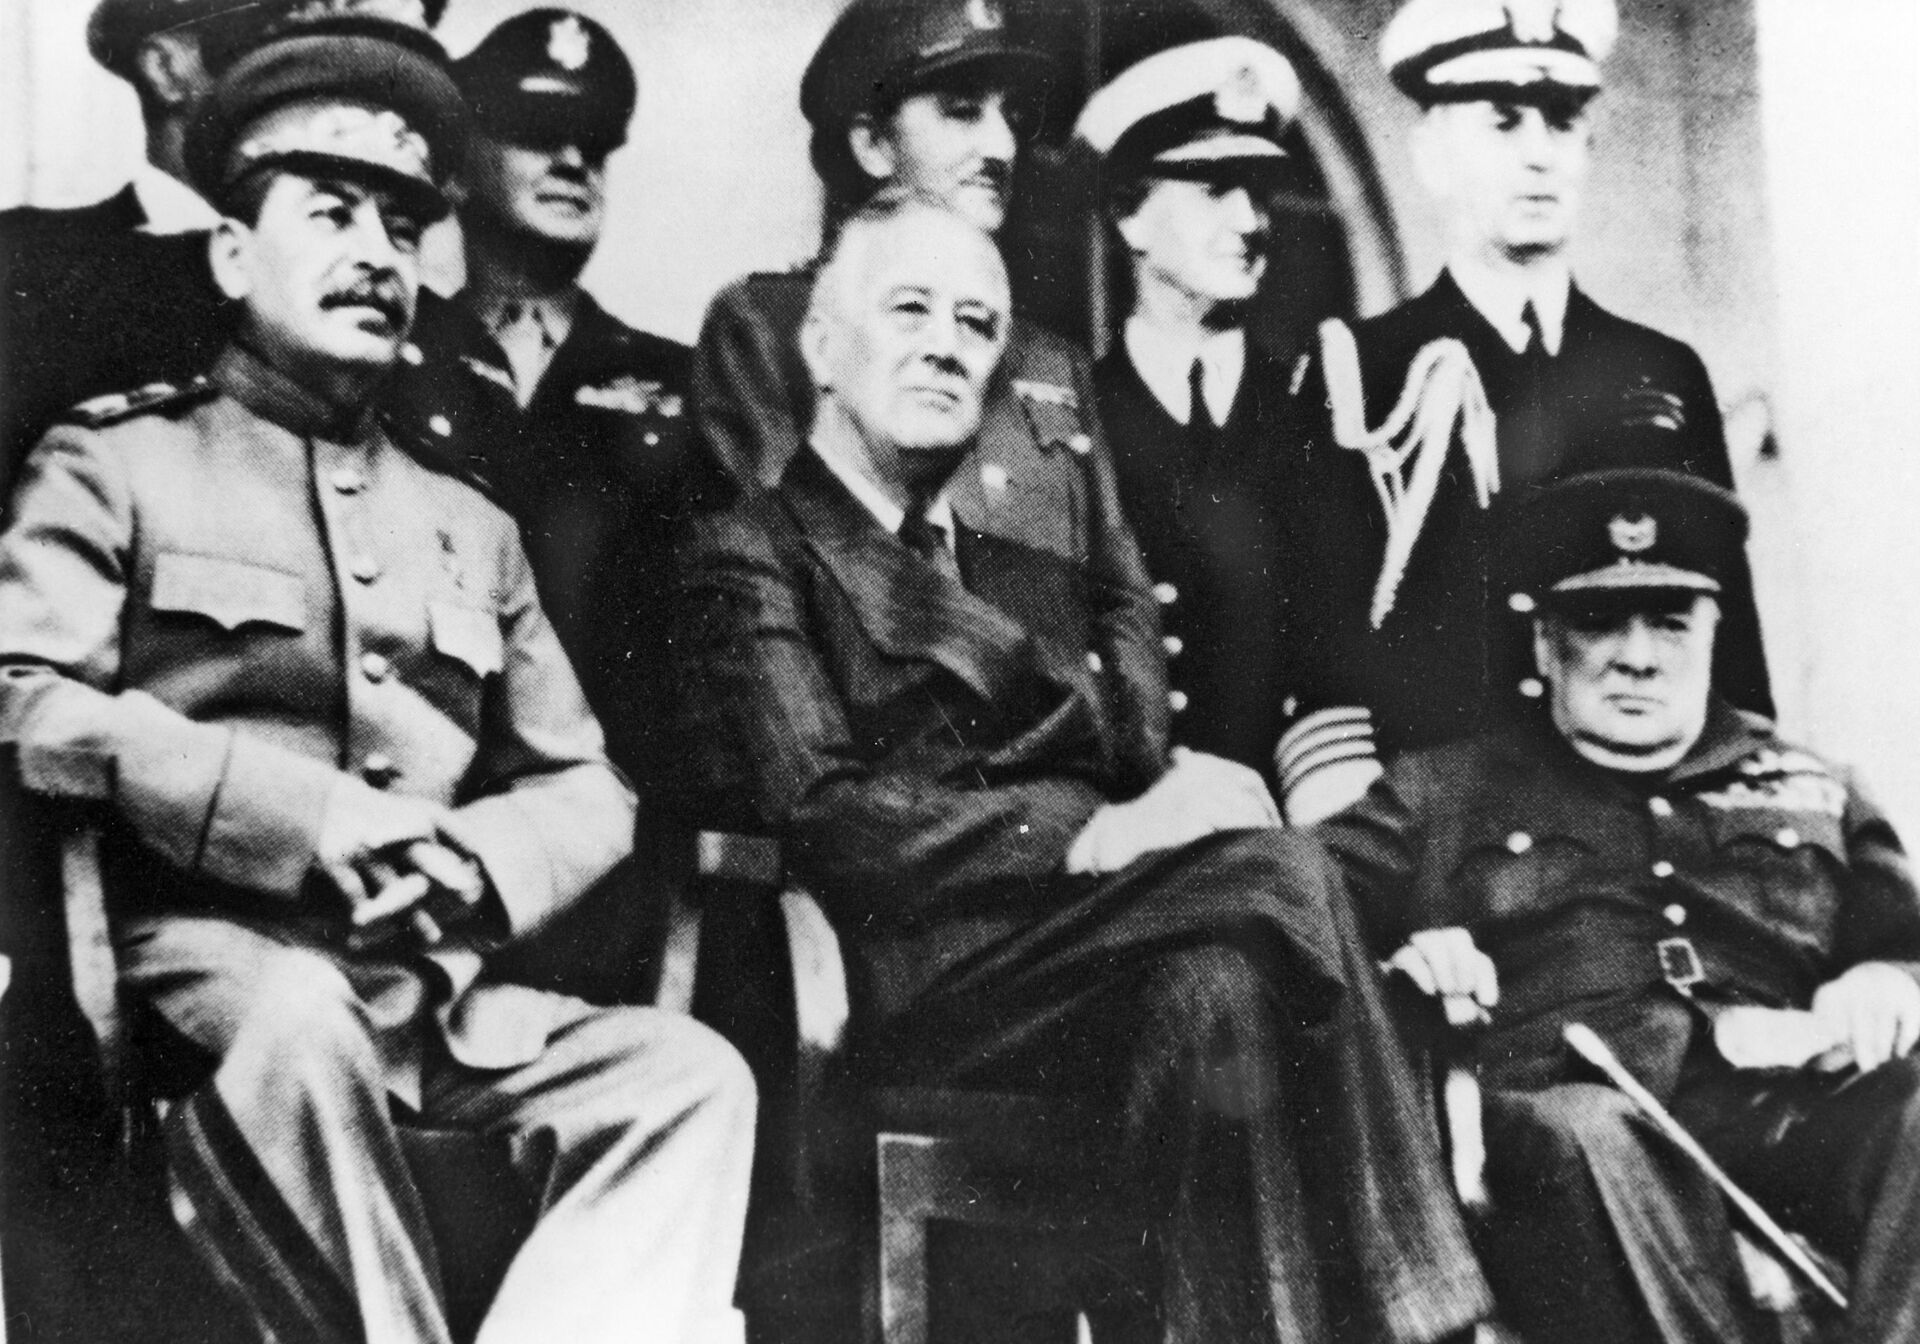 Тегеранская конференция лидеров трёх стран: Ф. Д. Рузвельта (США), У. Черчилля (Великобритания) и И. В. Сталина (СССР) состоялась в Тегеране с 28 ноября — 1 декабря 1943 года. - Sputnik Узбекистан, 1920, 09.03.2021